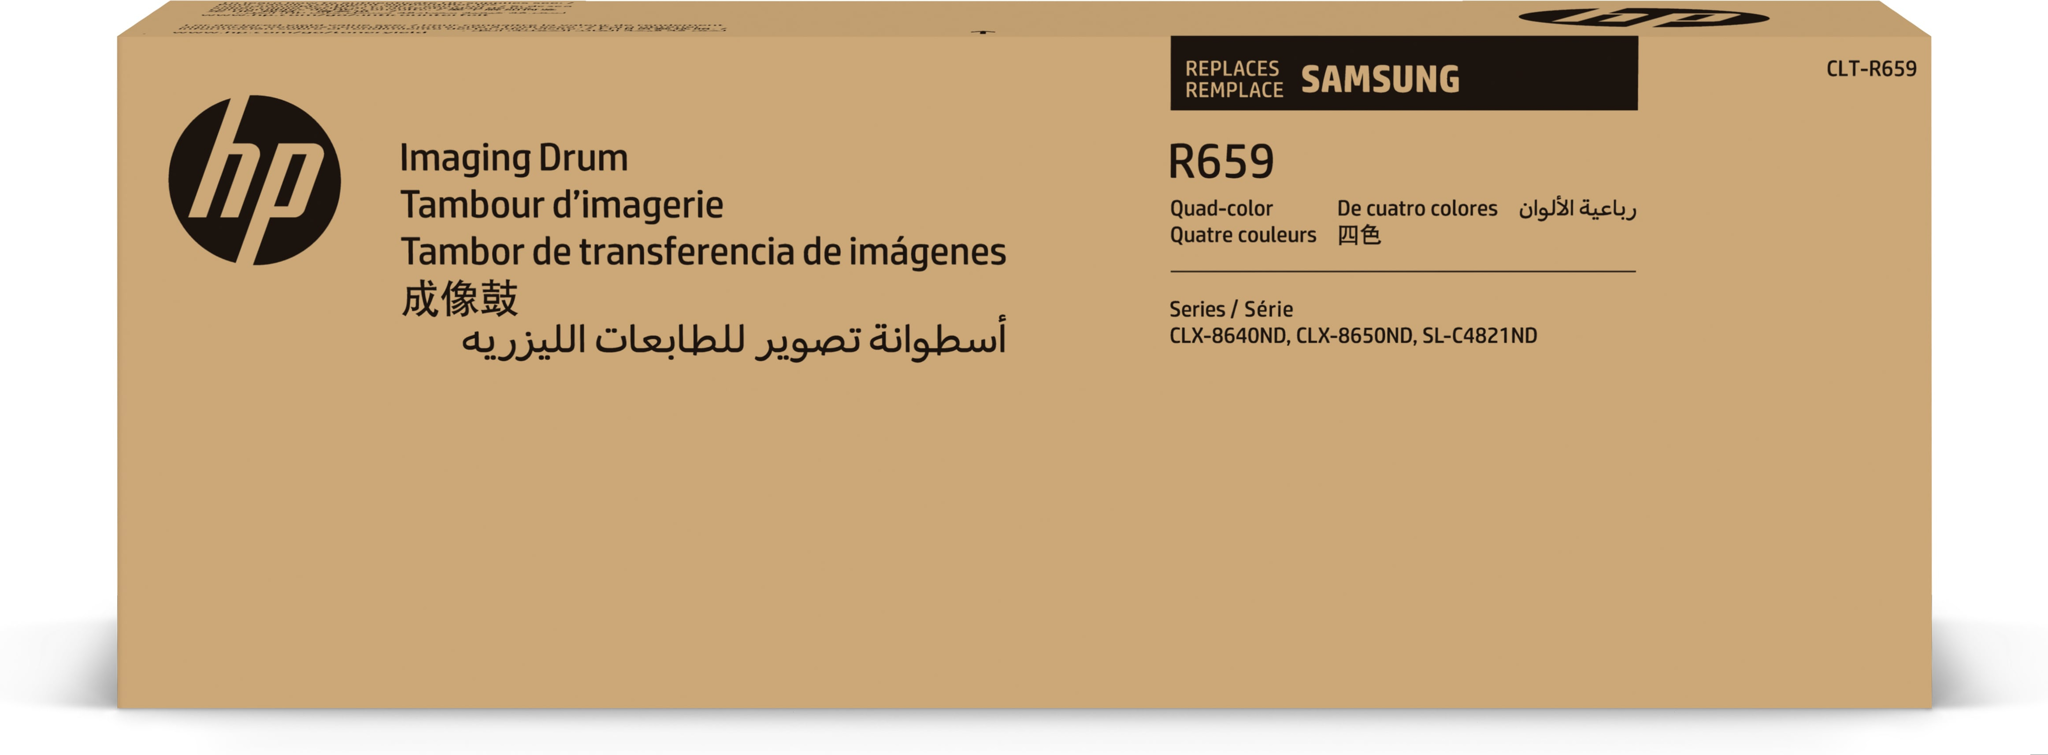 Bild von HP CLT-R659 - Original - Samsung MultiXpress CLX-8640ND Samsung MultiXpress CLX-8650ND - 1 Stück(e) - 40000 Seiten - Laserdrucken - Schwarz - Cyan - Magenta - Gelb